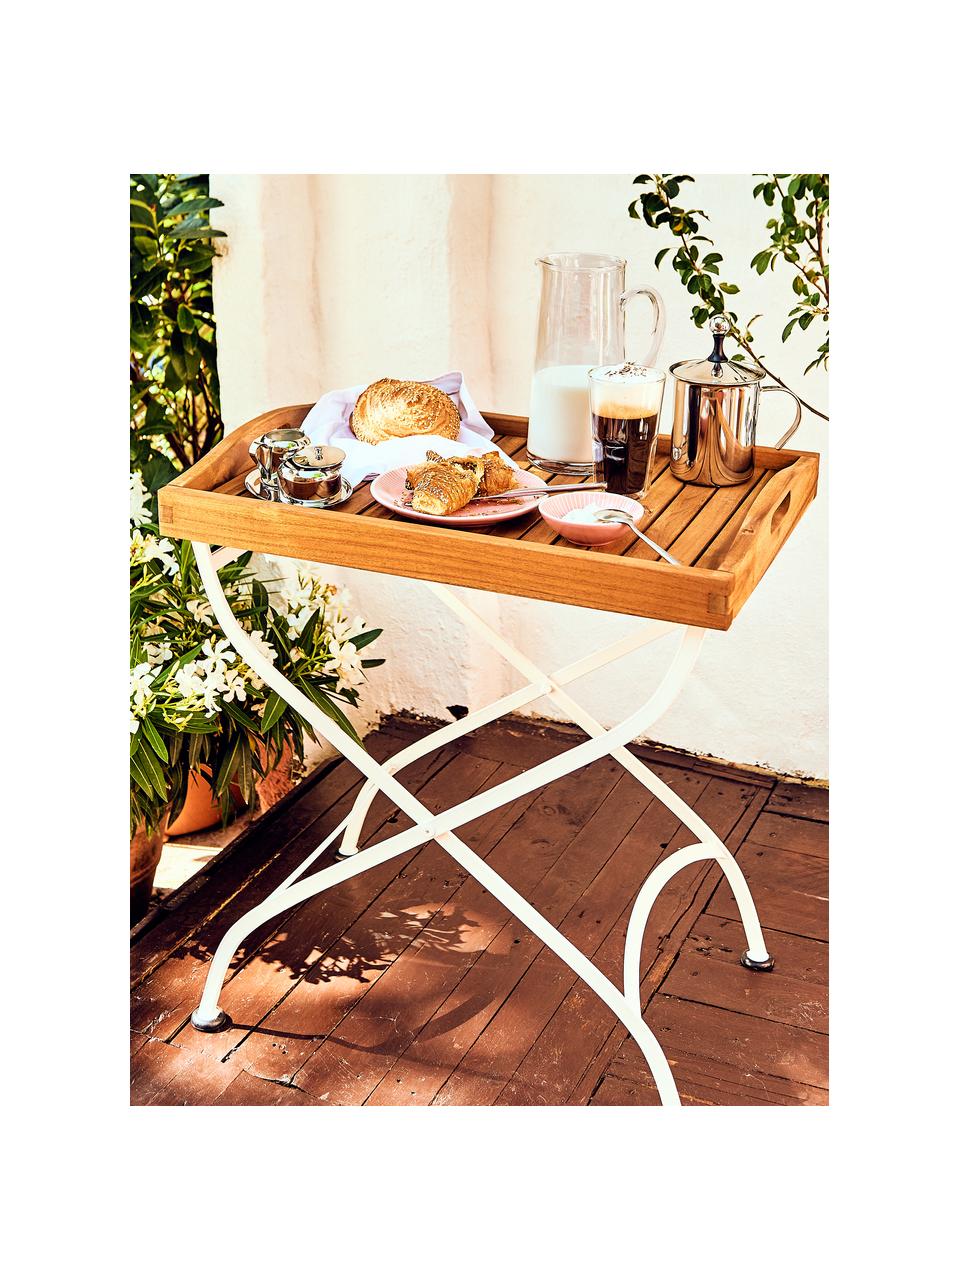 Zahradní stolek - tác s dřevěnou deskouParklife, Bílá, akátové dřevo